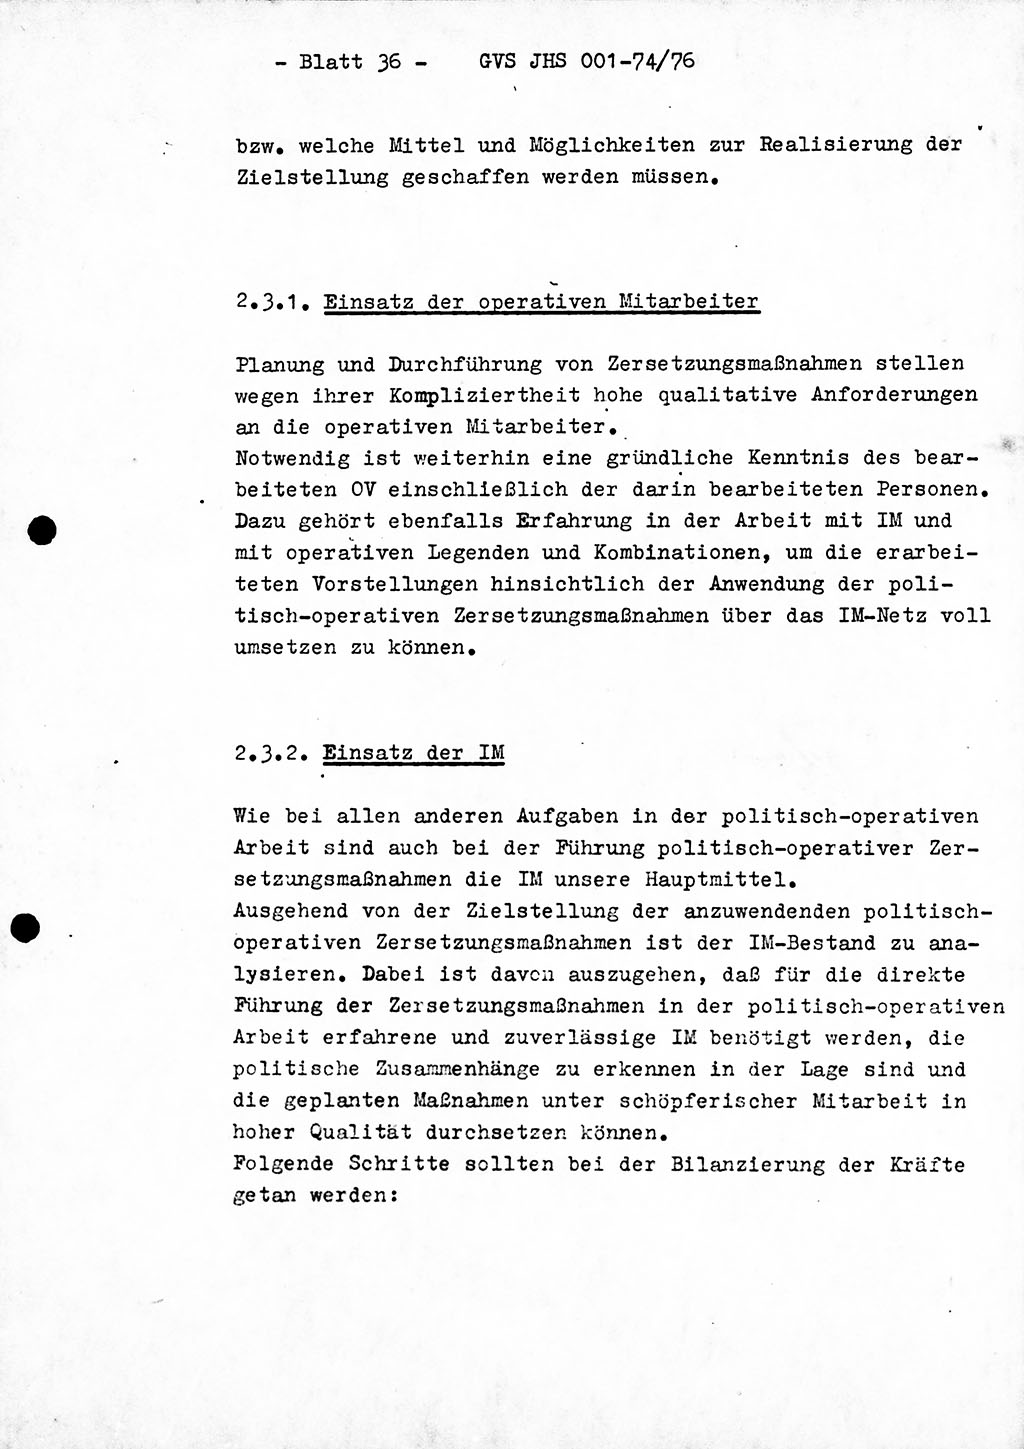 Diplomarbeit Hauptmann Joachim Tischendorf (HA ⅩⅩ), Ministerium für Staatssicherheit (MfS) der Deutschen Demokratischen Republik (DDR), Juristische Hochschule (JHS), Geheime Verschlußsache (GVS) 001-74/76, Potsdam 1976, Seite 36 (Dipl.-Arb. MfS DDR JHS GVS 001-74/76 1976, S. 36)